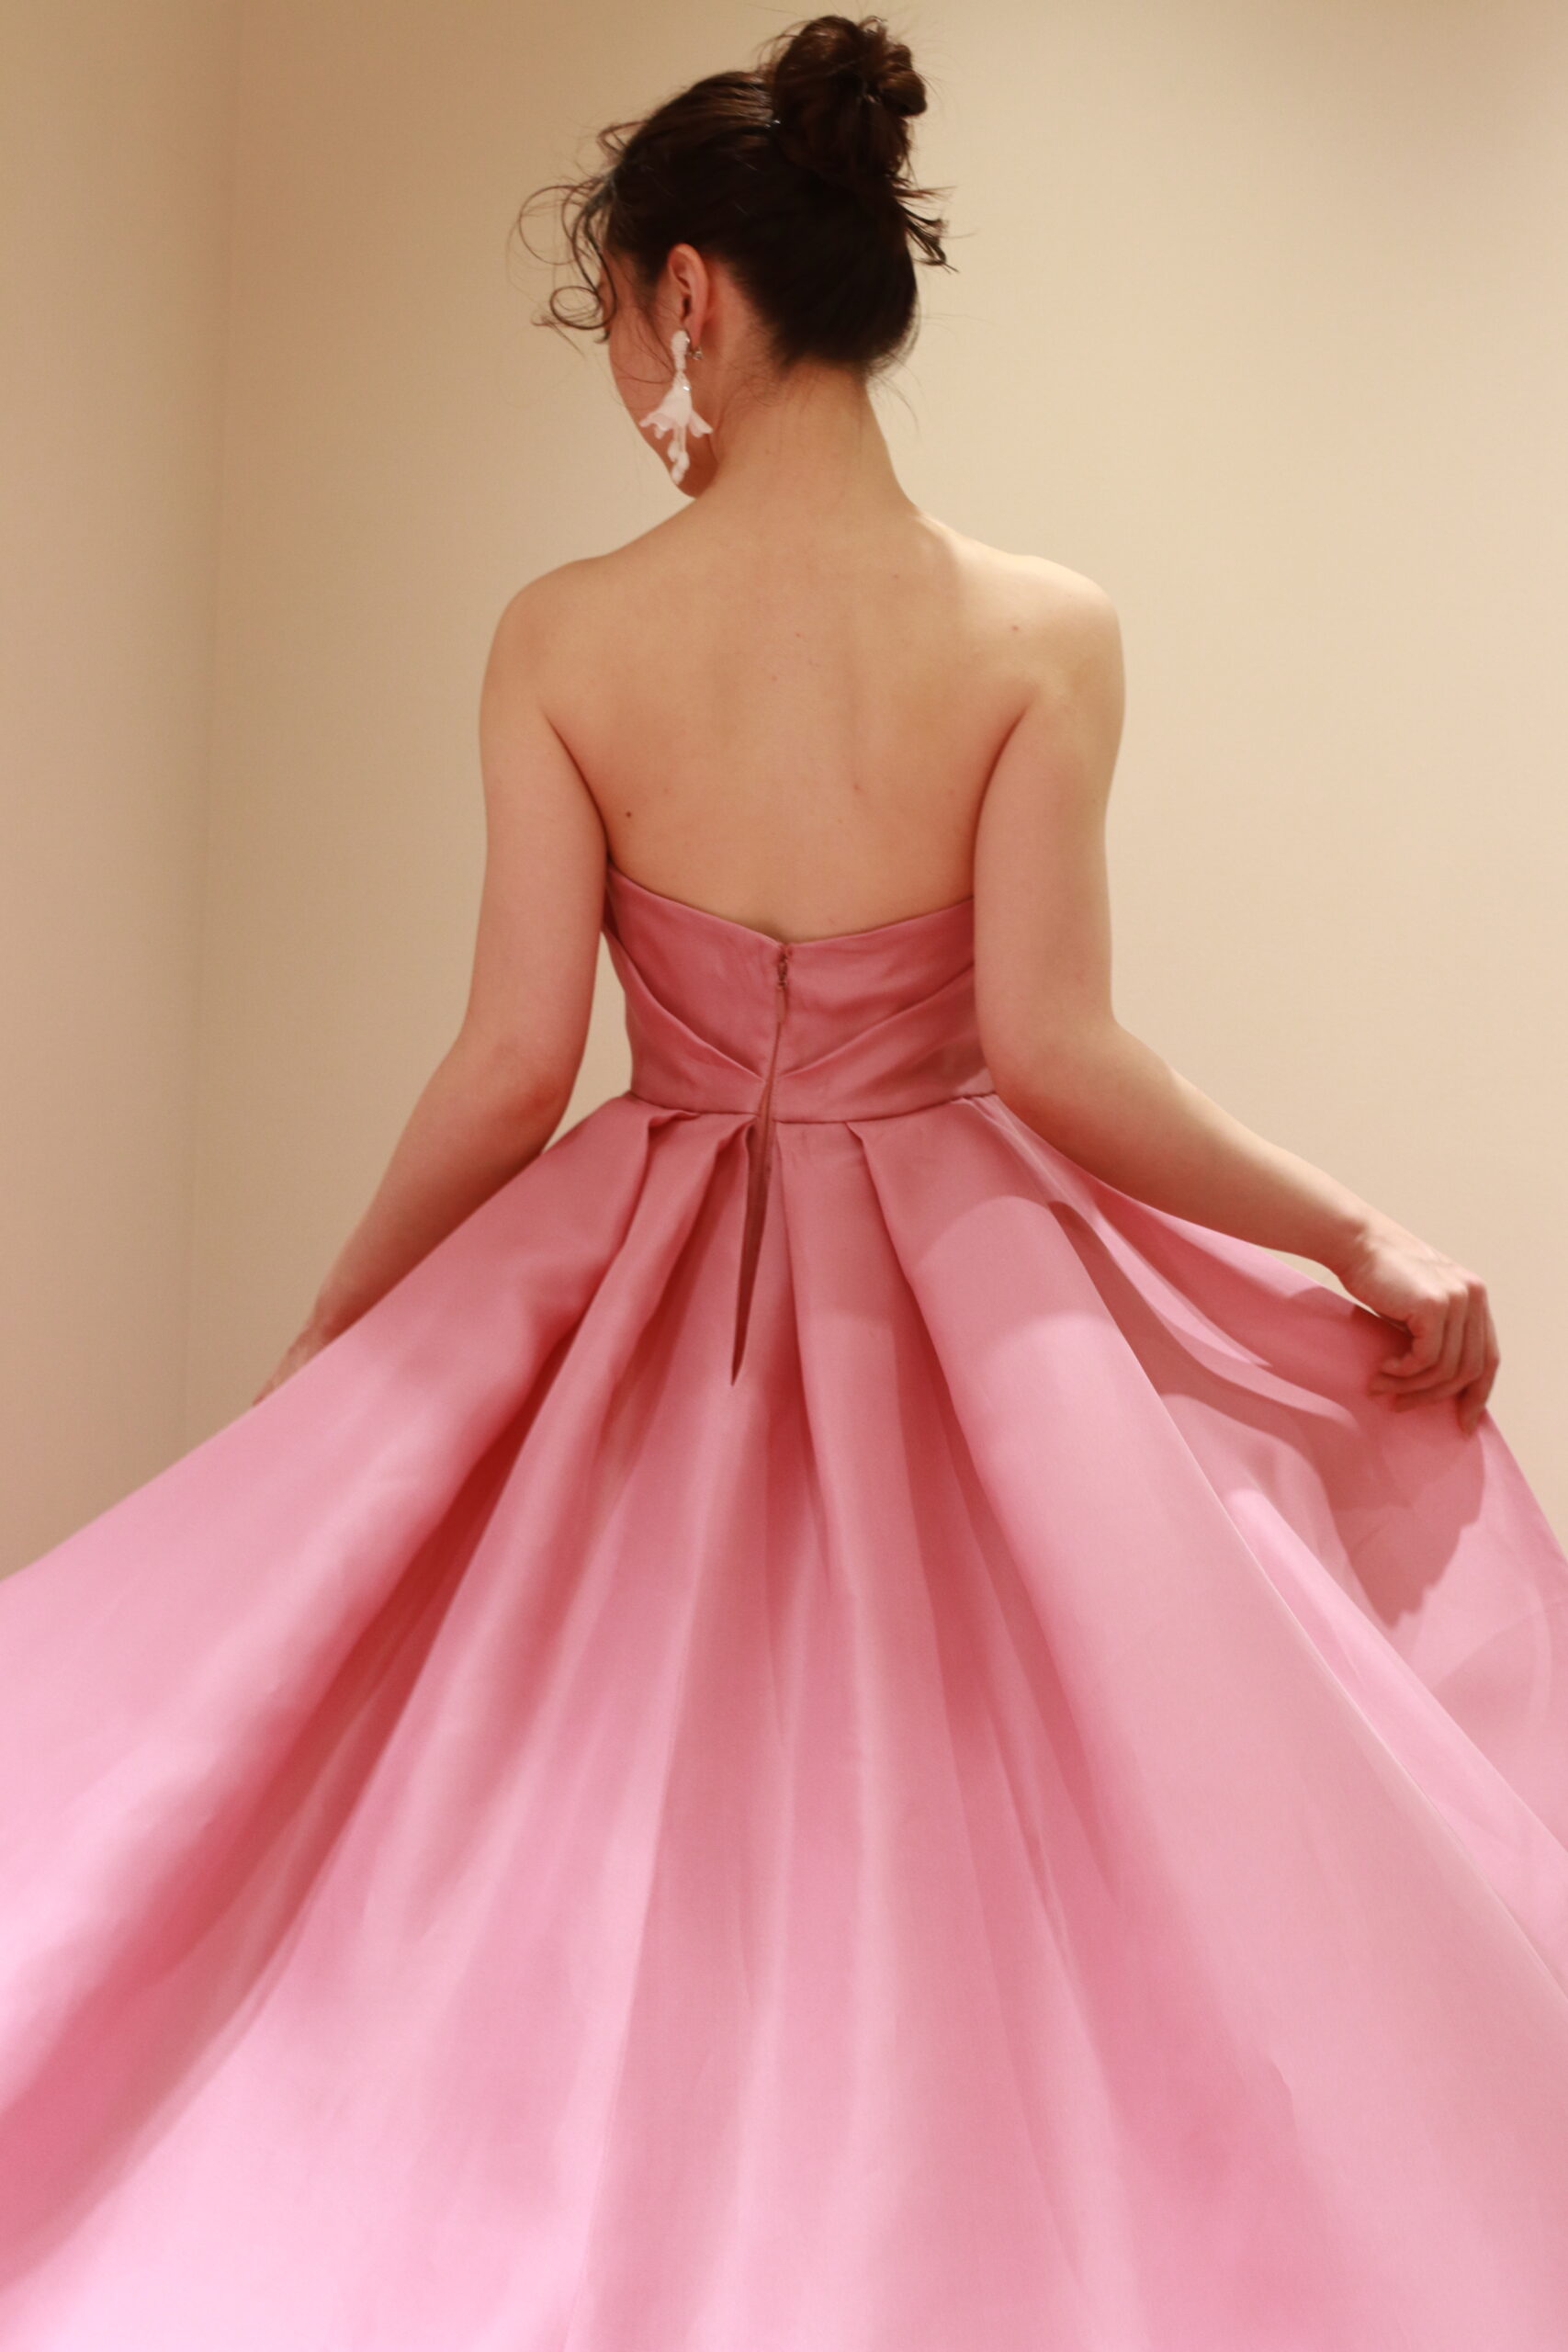 表参道のトリートドレッシングアディション店に入荷したモニークルイリエのピンクのカラードレス、花嫁の動きに合わせて華やかなトレーンが揺らめきます、